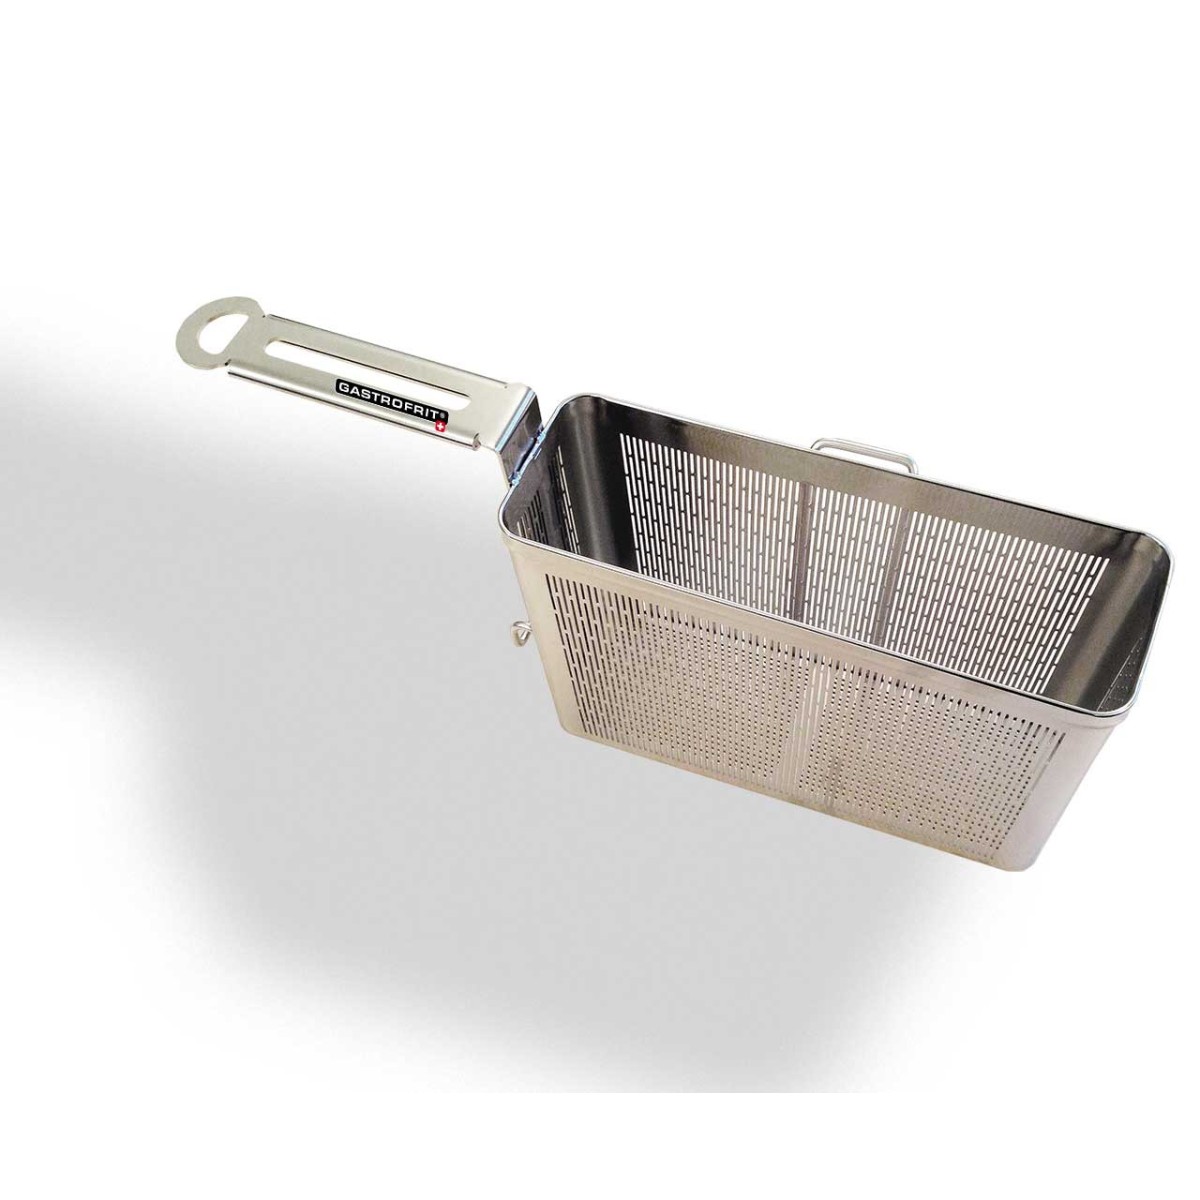 Basket TW-350 sheet metal right